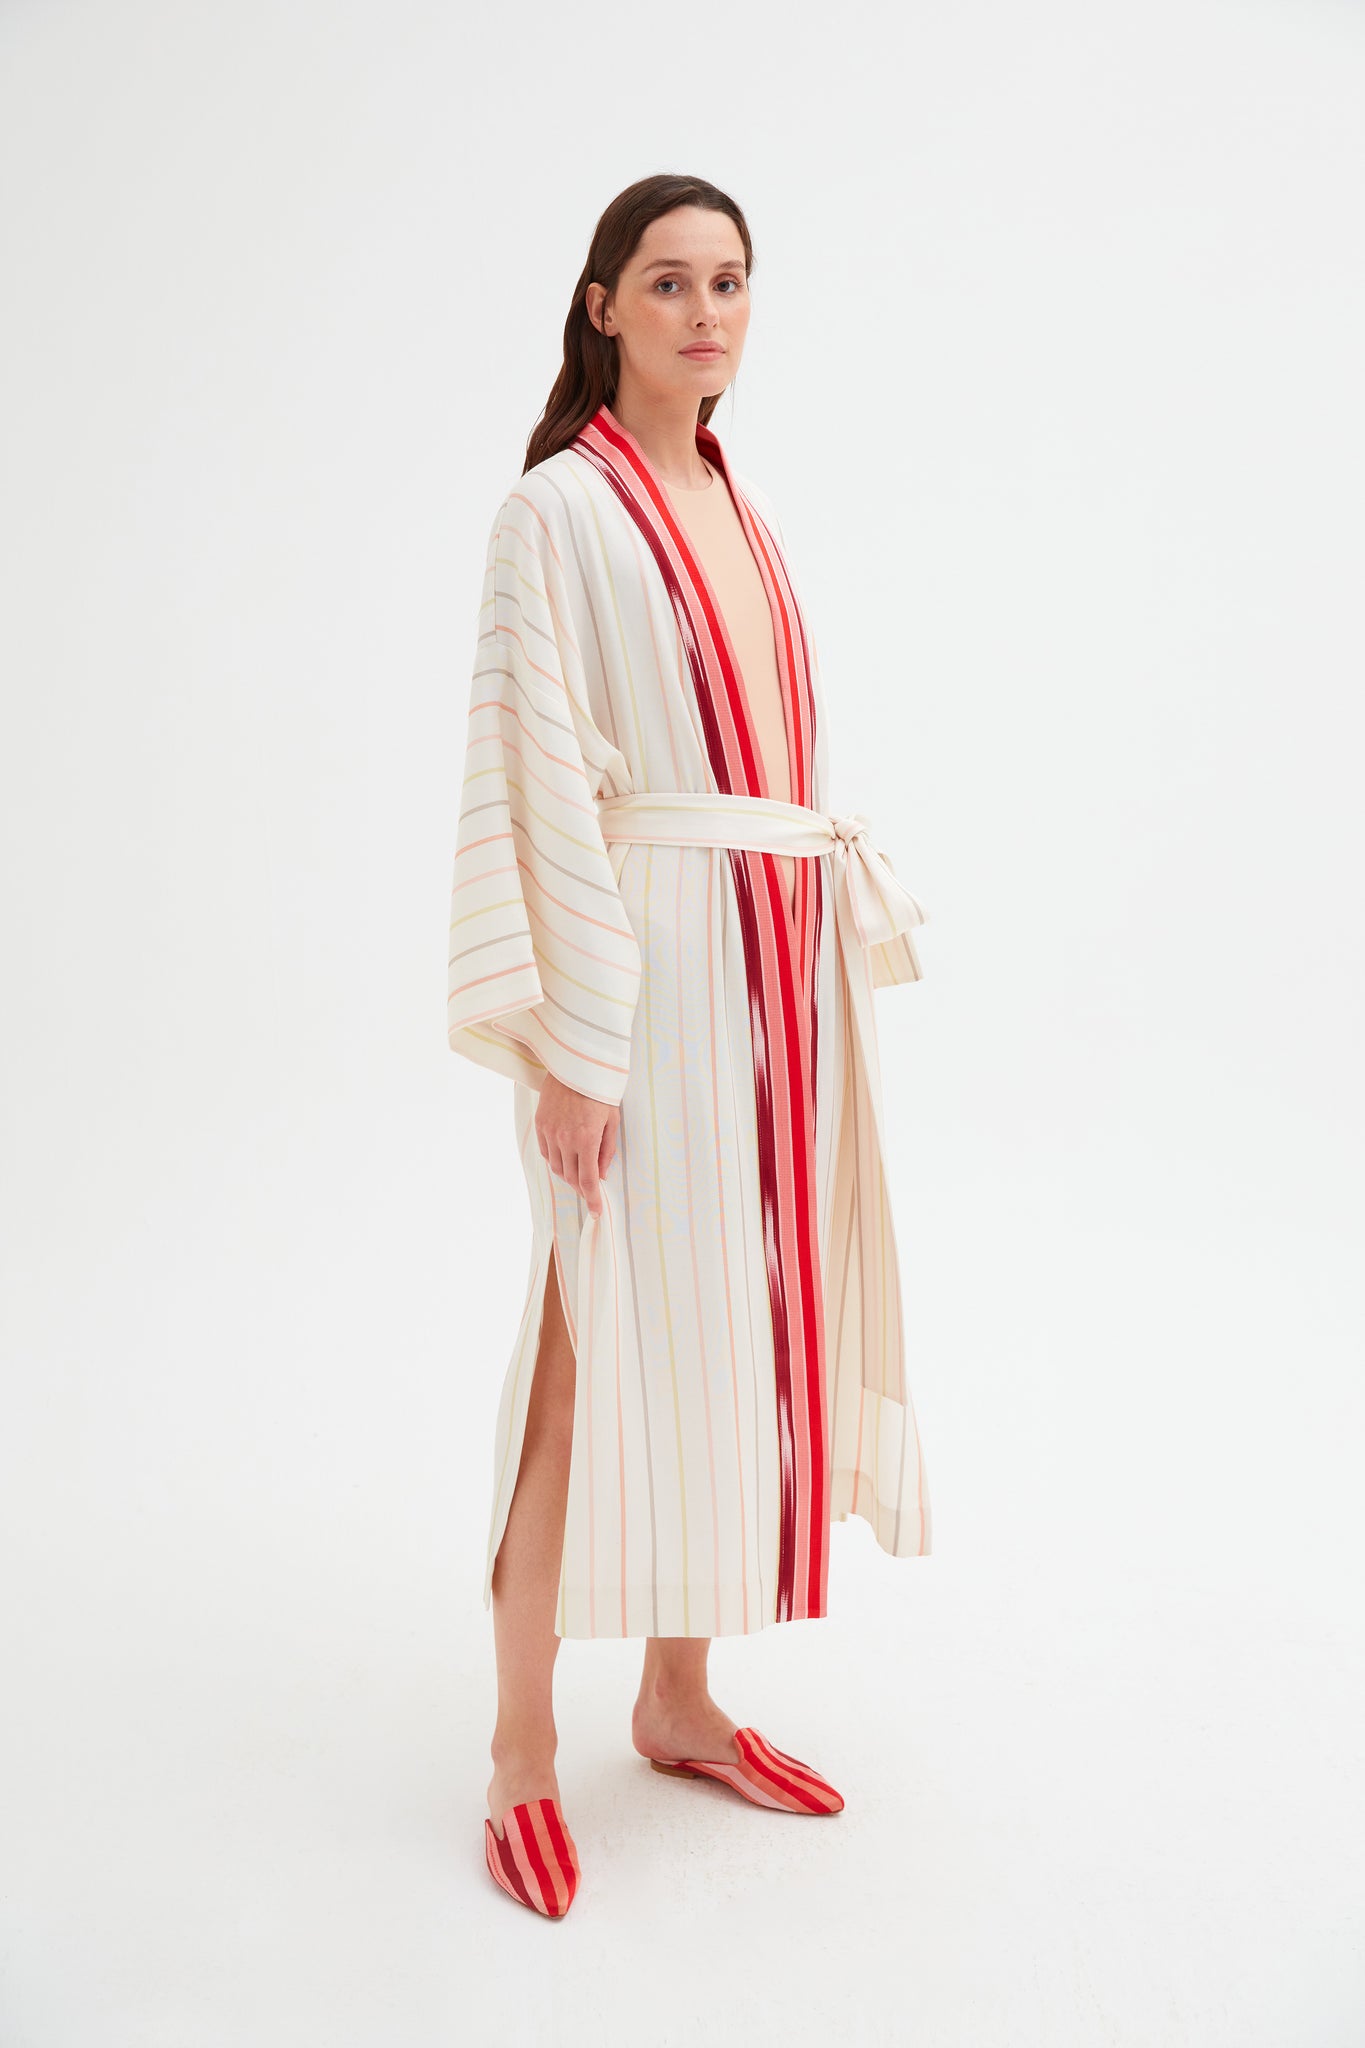 Classic Cream Striped Kimono